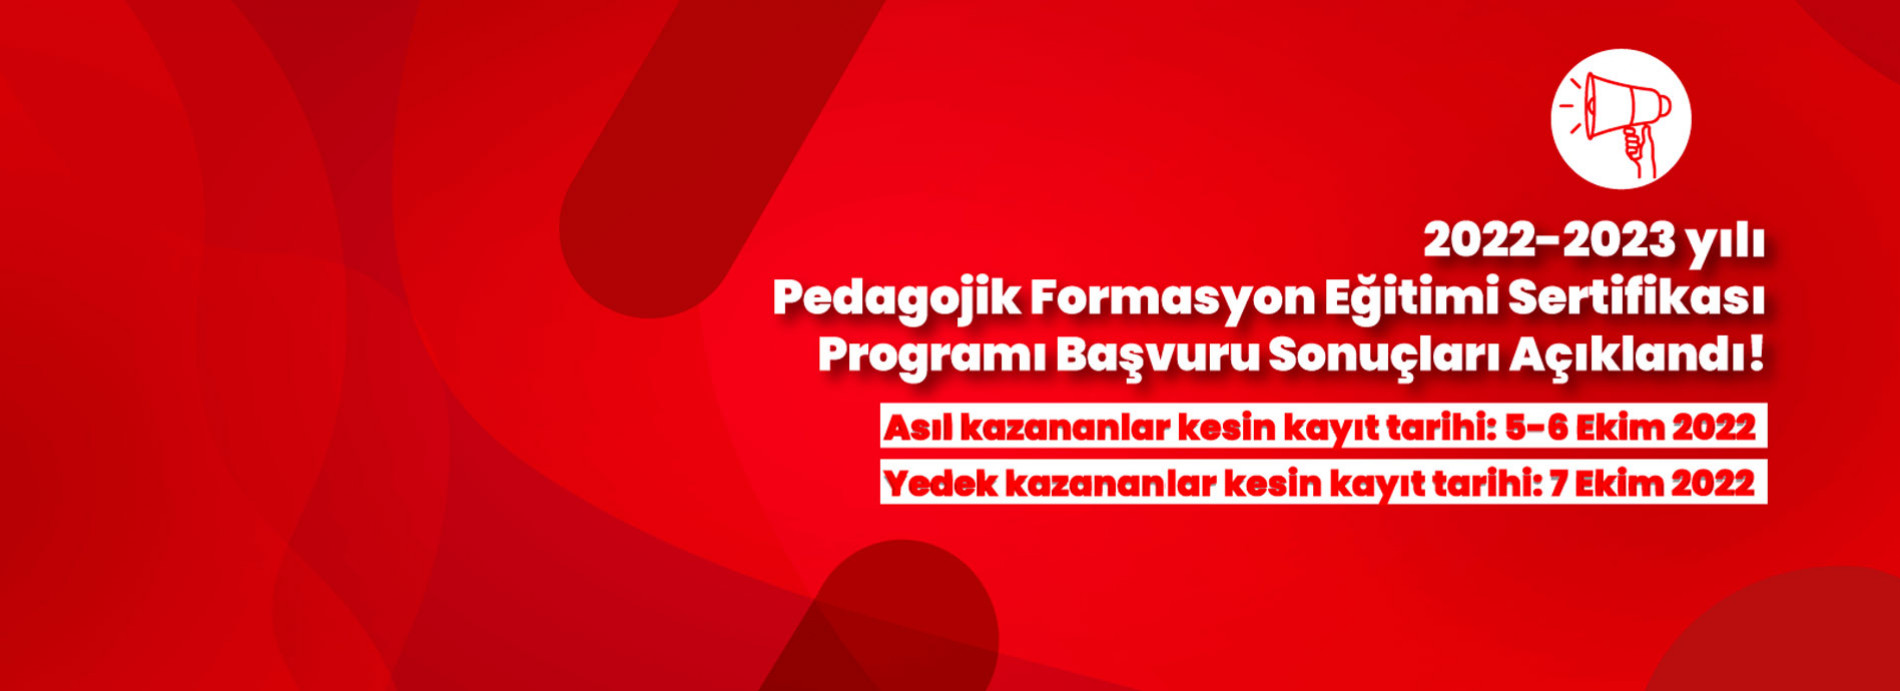 2022-2023 Pedagojik Formasyon Eğitimi Sertifikası Programı Başvuru Sonuçları